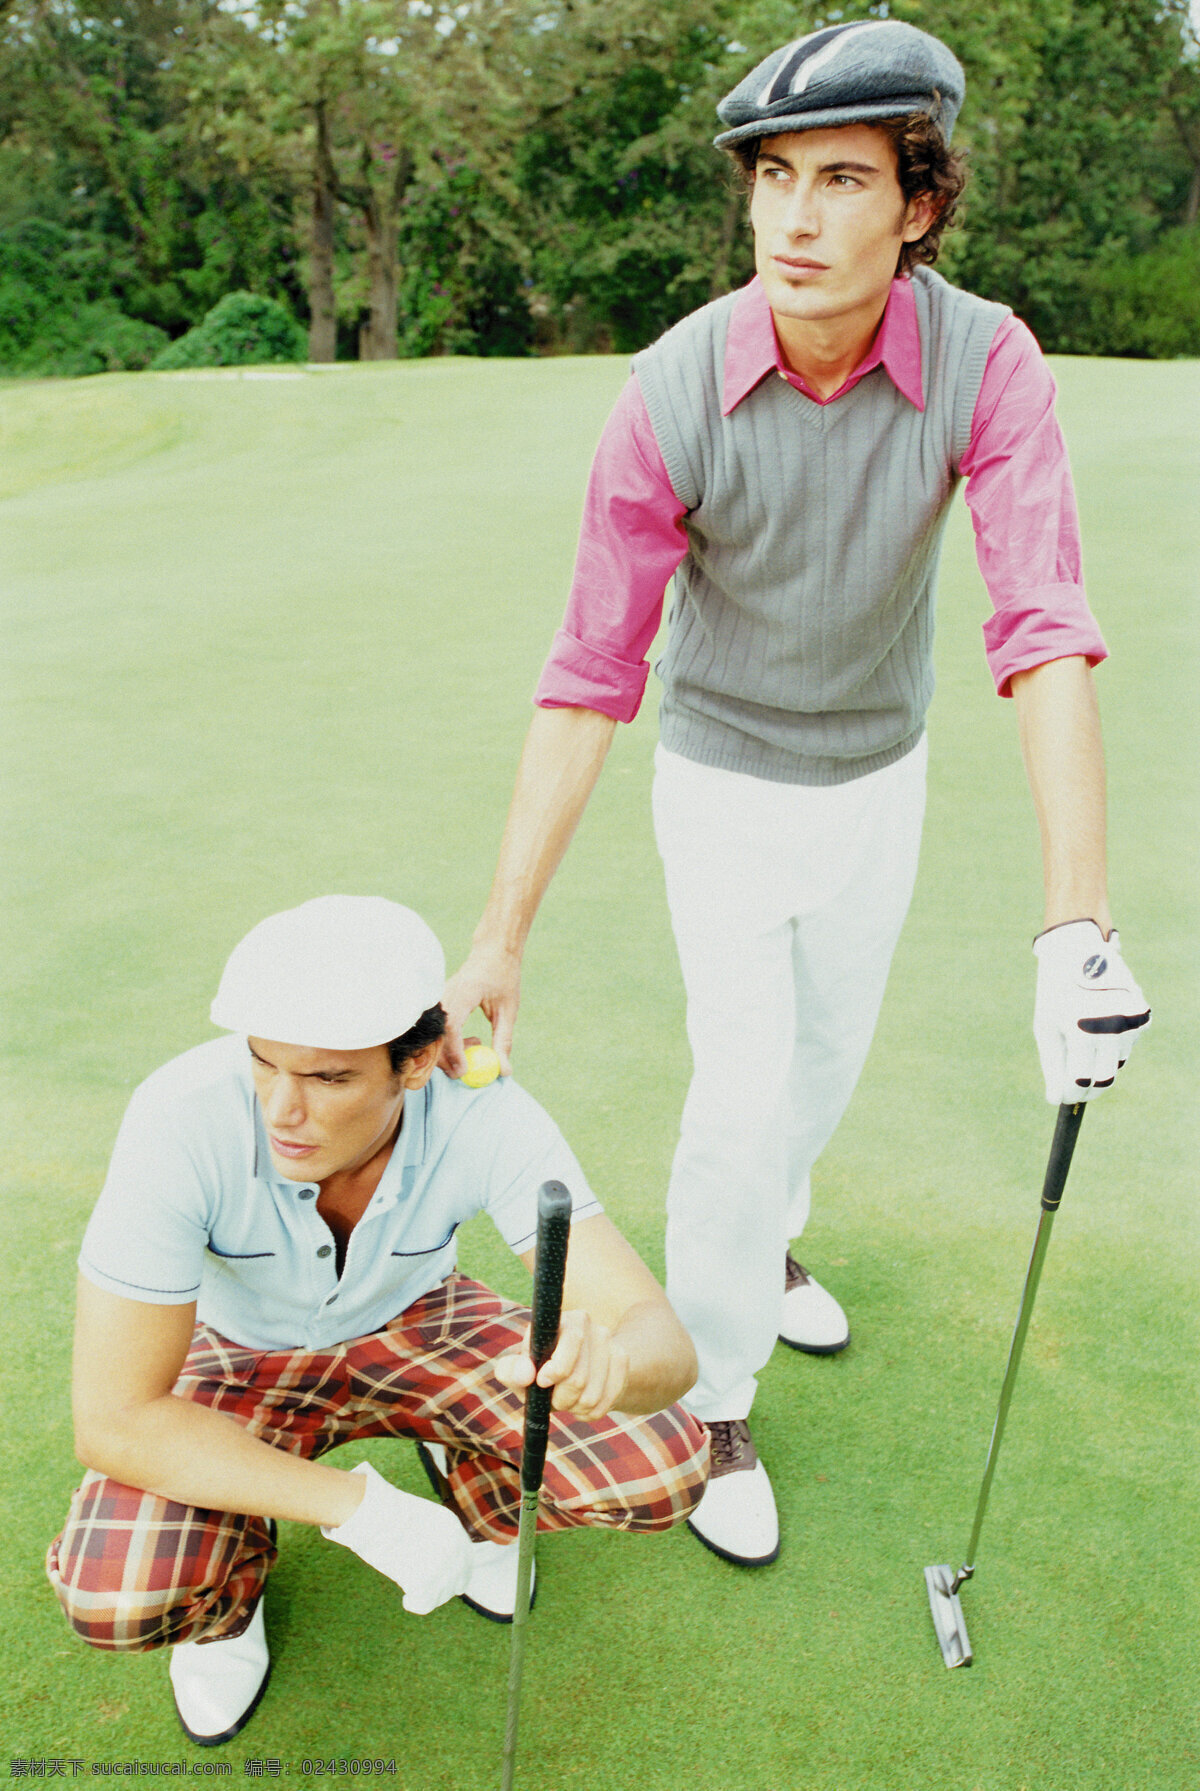 手 高尔夫 球杆 时尚 男性 高尔夫球 球场 草地 贵族运动 休闲运动 尊贵运动 体育运动 时尚男性 男人 生活百科 绿色